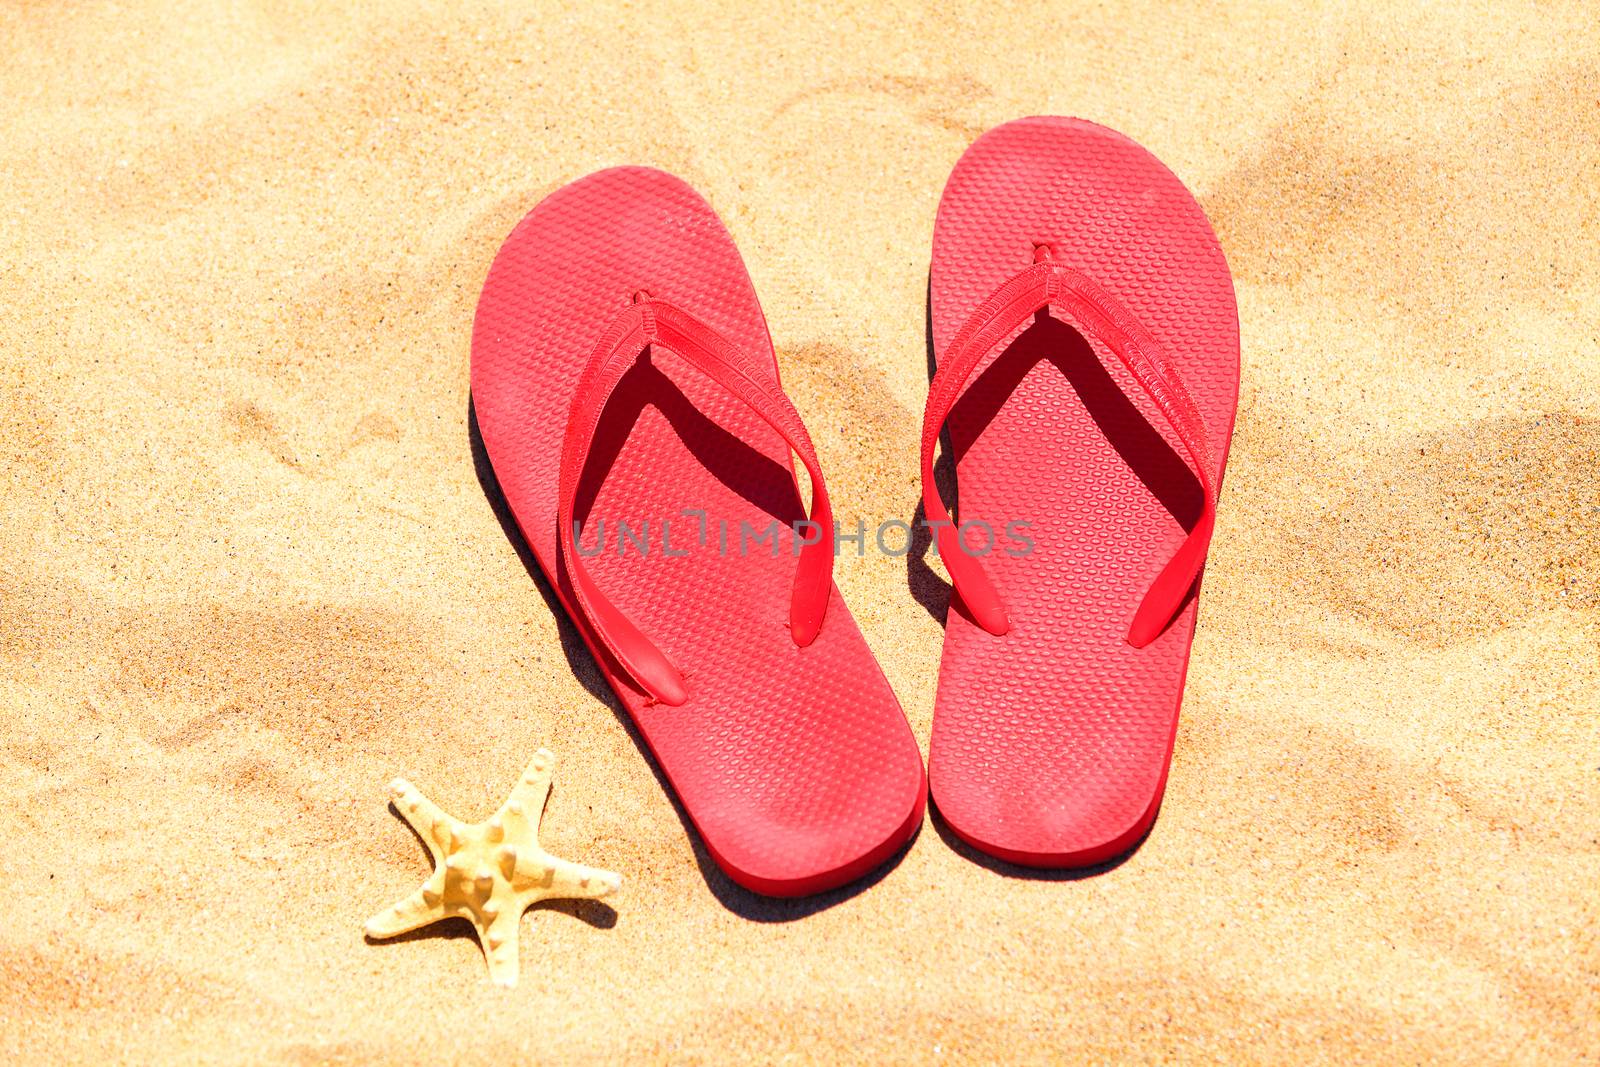 Flip-flops on a sand